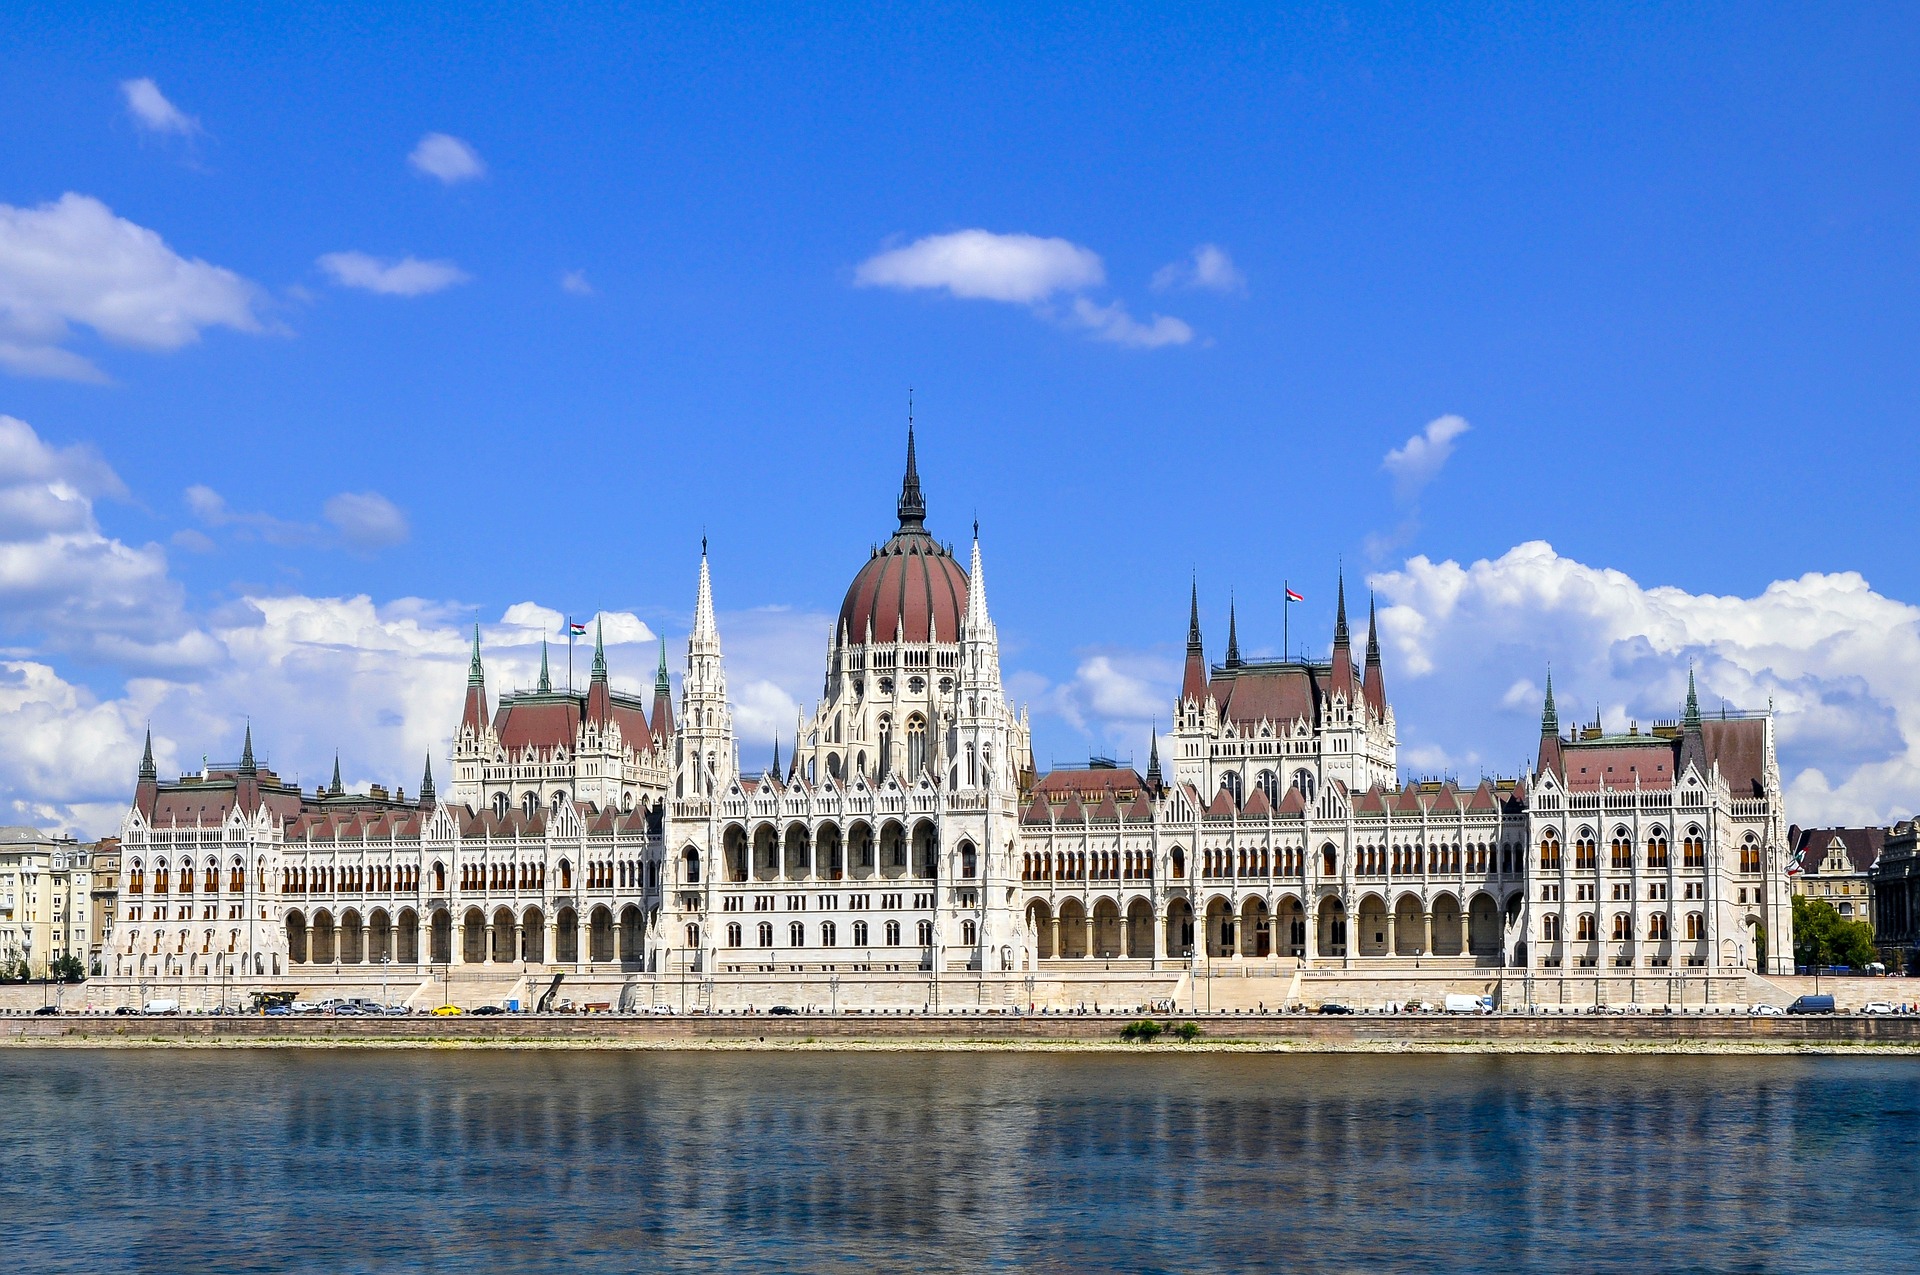 Das ungarische Parlament ist die beste Touristenattraktion der Welt